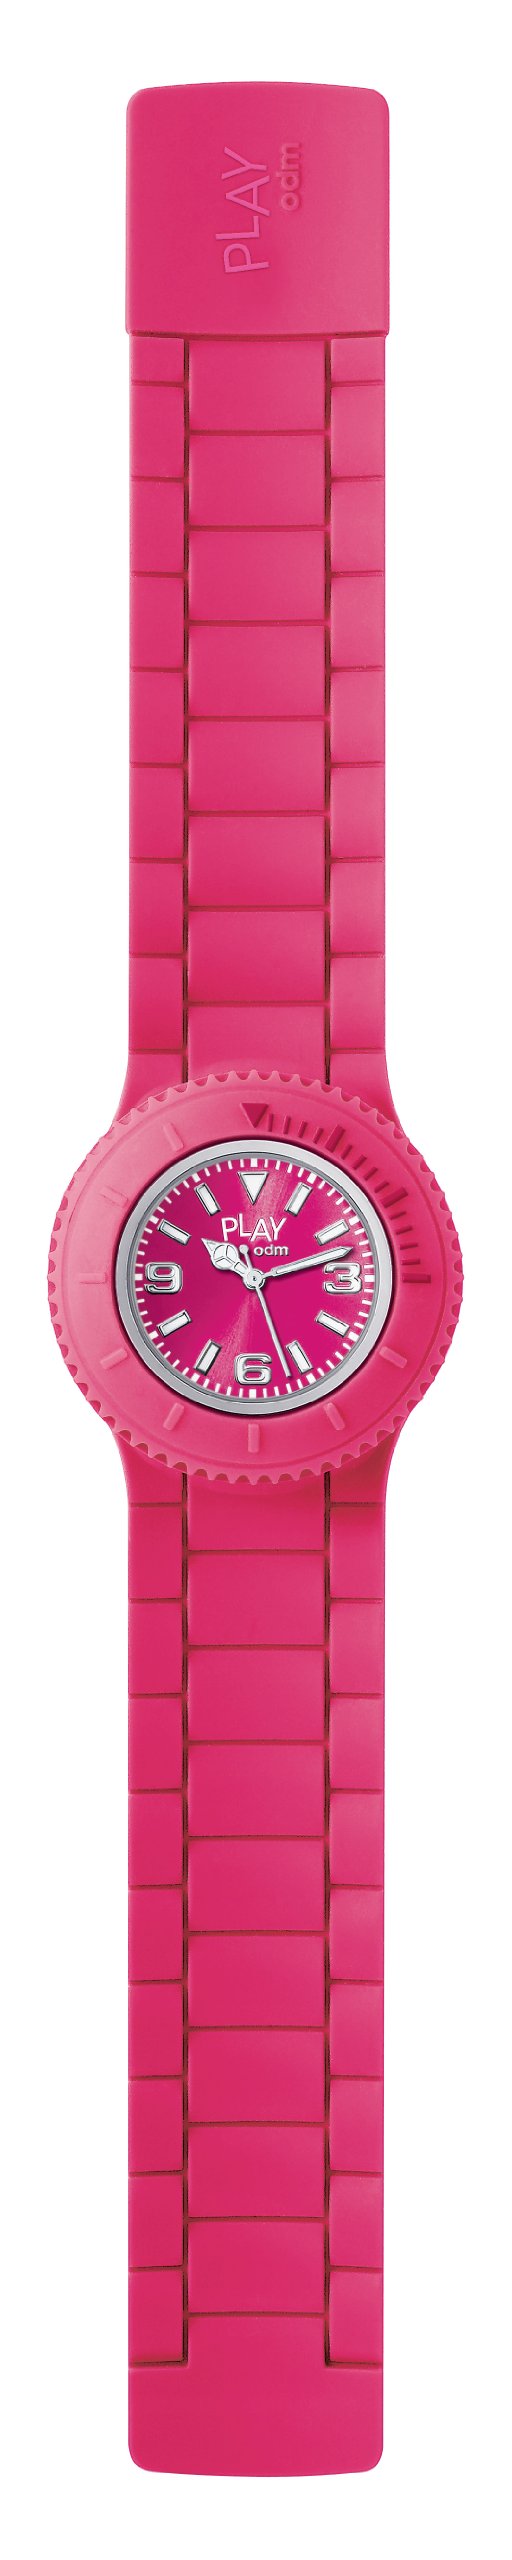 o.d.m. Play Flip Watch - Pink